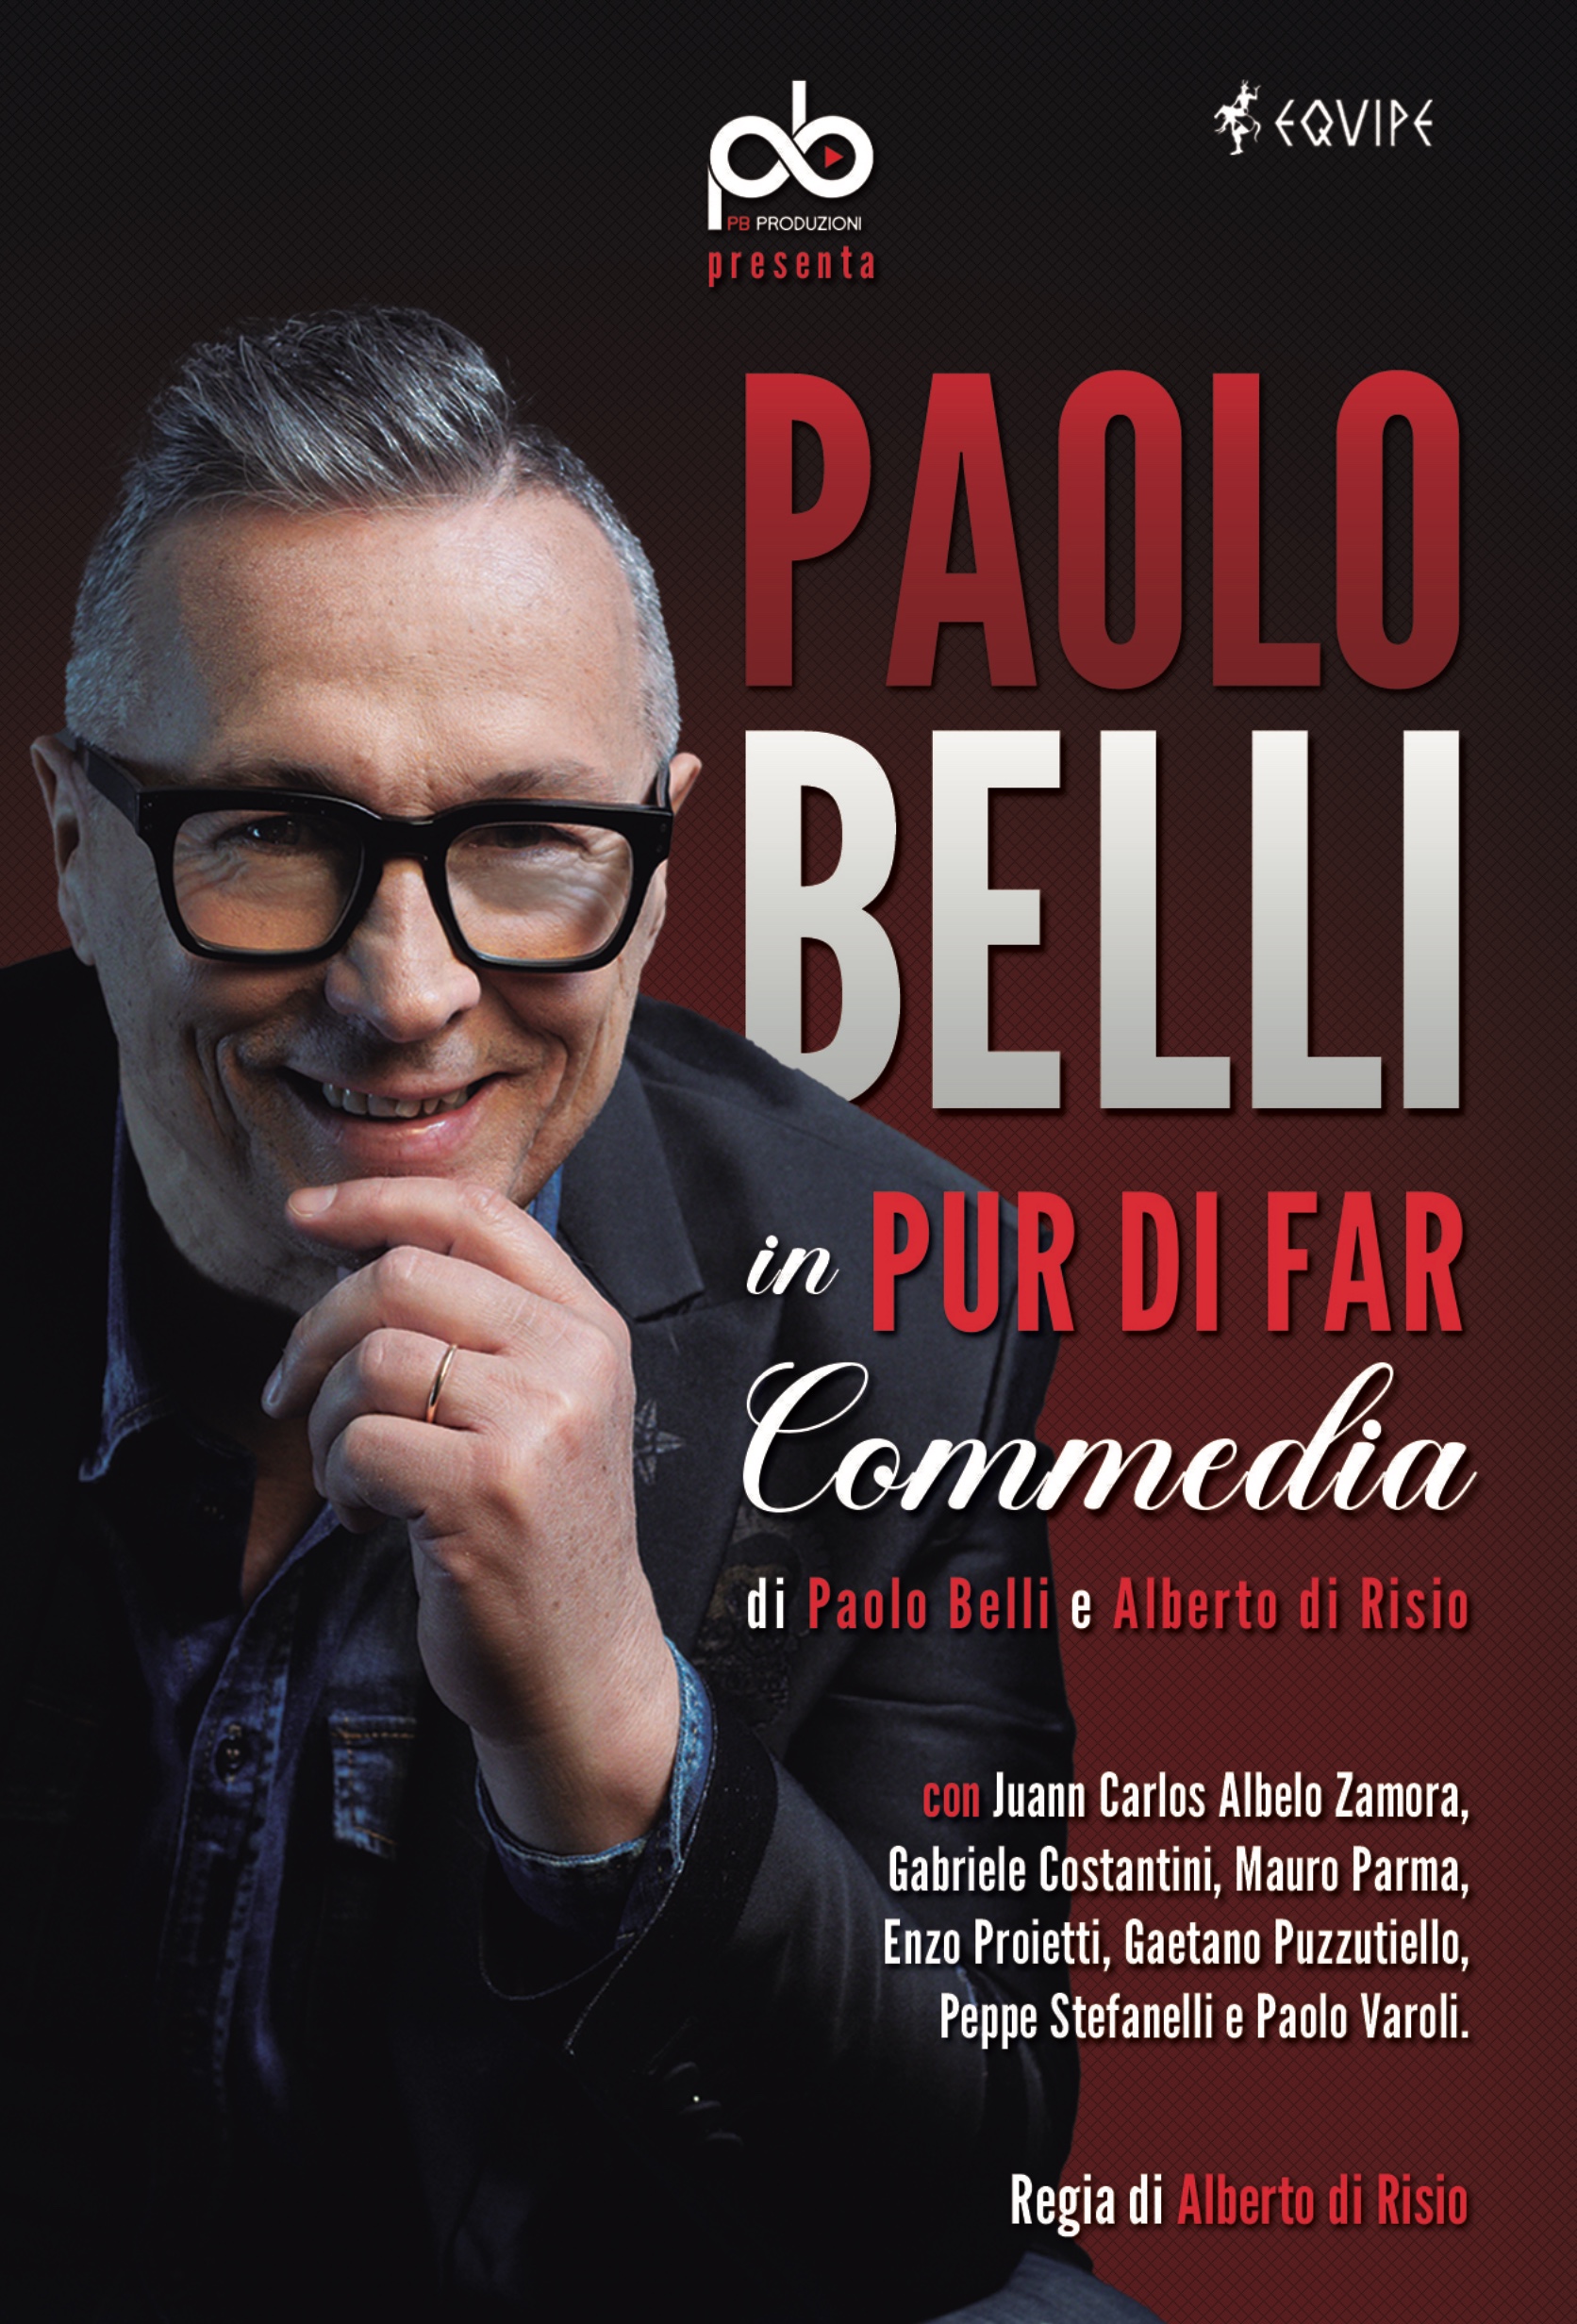 Paolo Belli – Pur di far commedia 17 FEBBRAIO 2023 - venerdì - ore 21.00